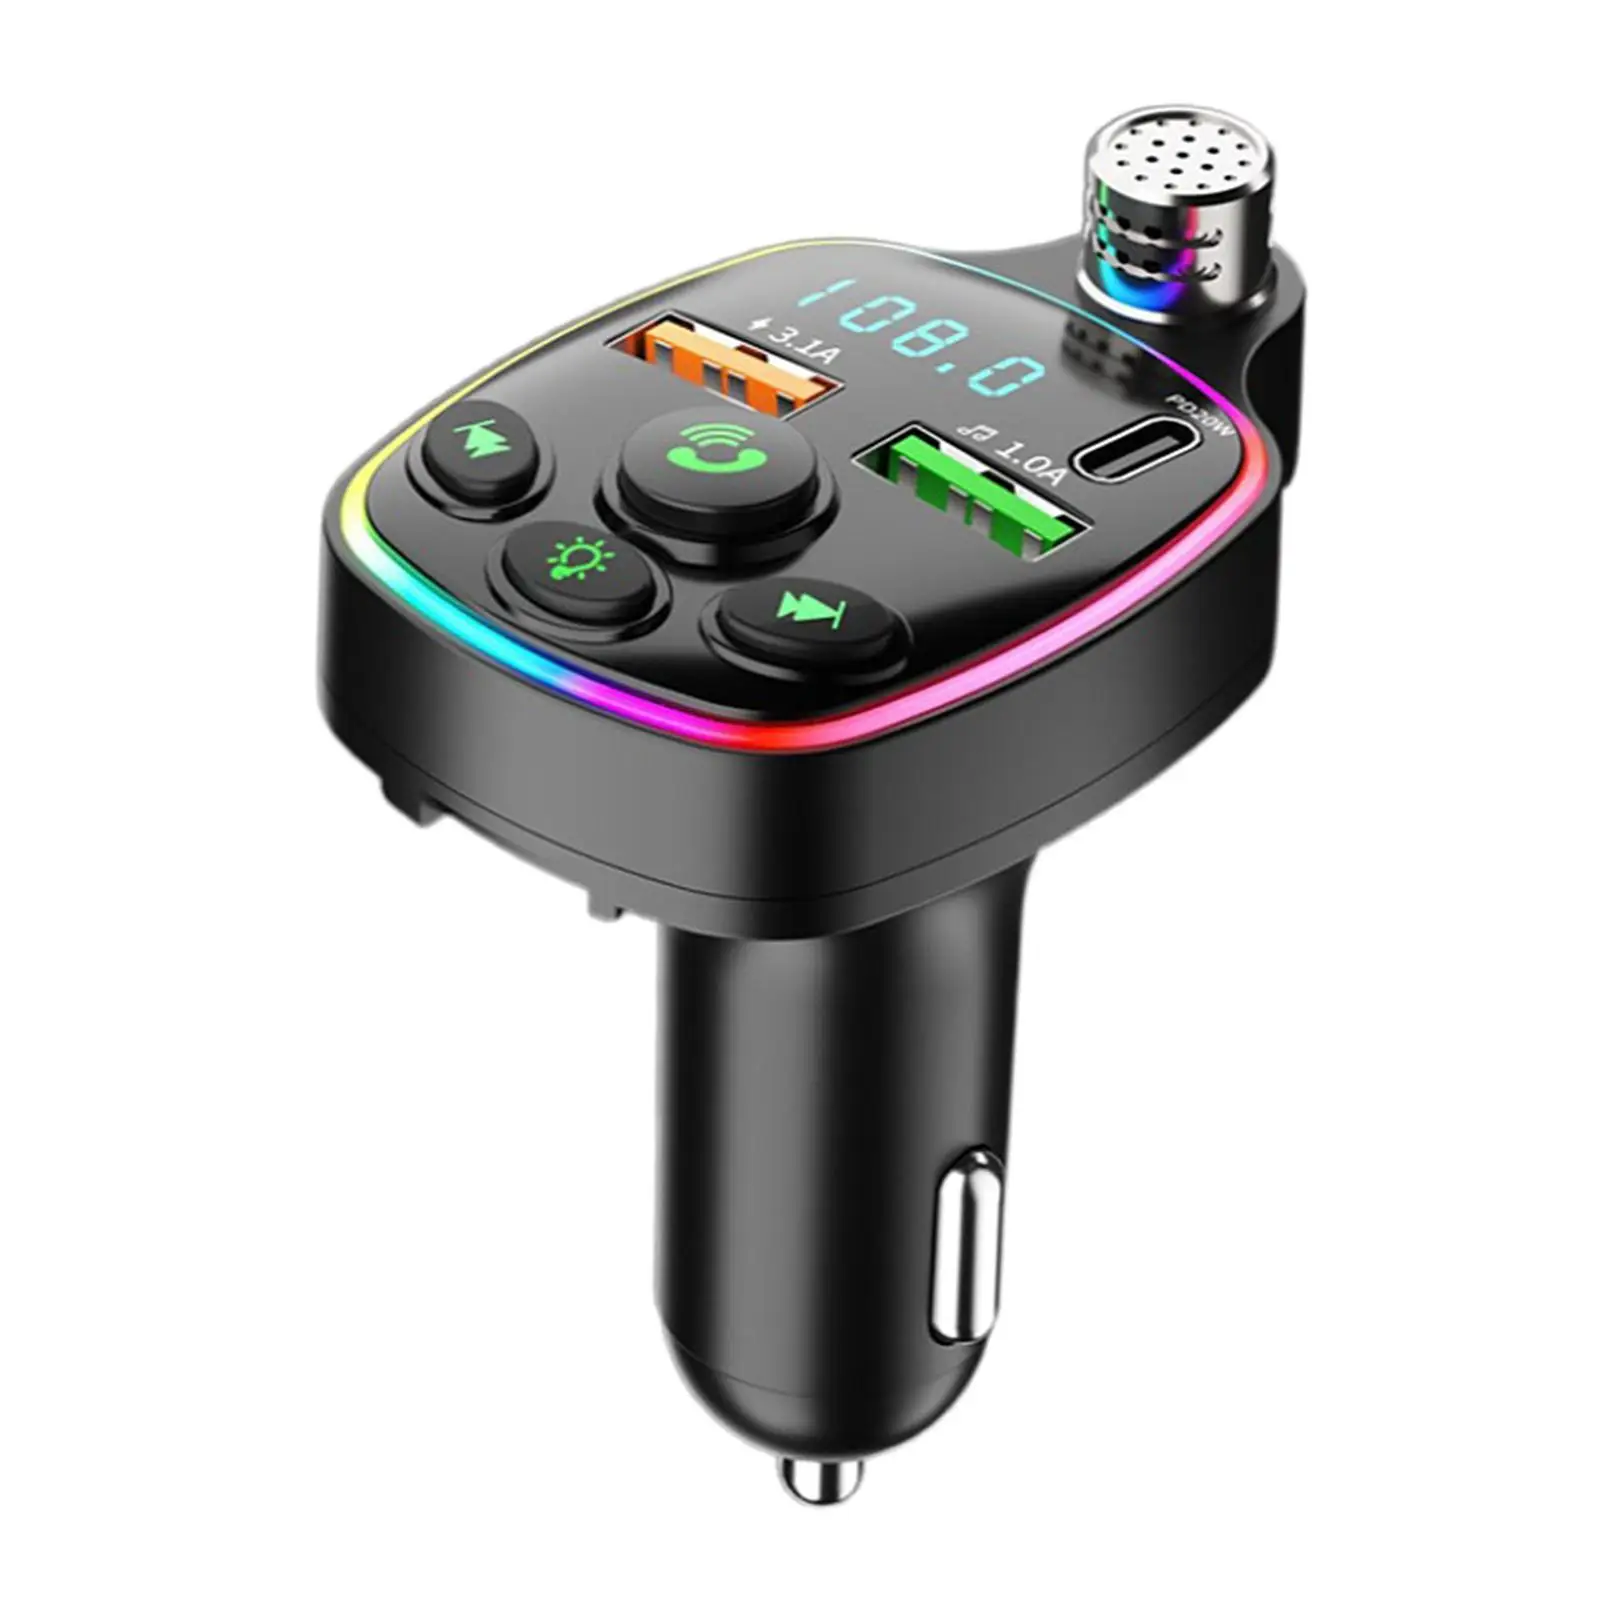 Car Adapter LED Backlit Cigarette Lighter Support U Disk Portable LED Display Fast Charging MP3 Music Player V5.0 FM Transmitter